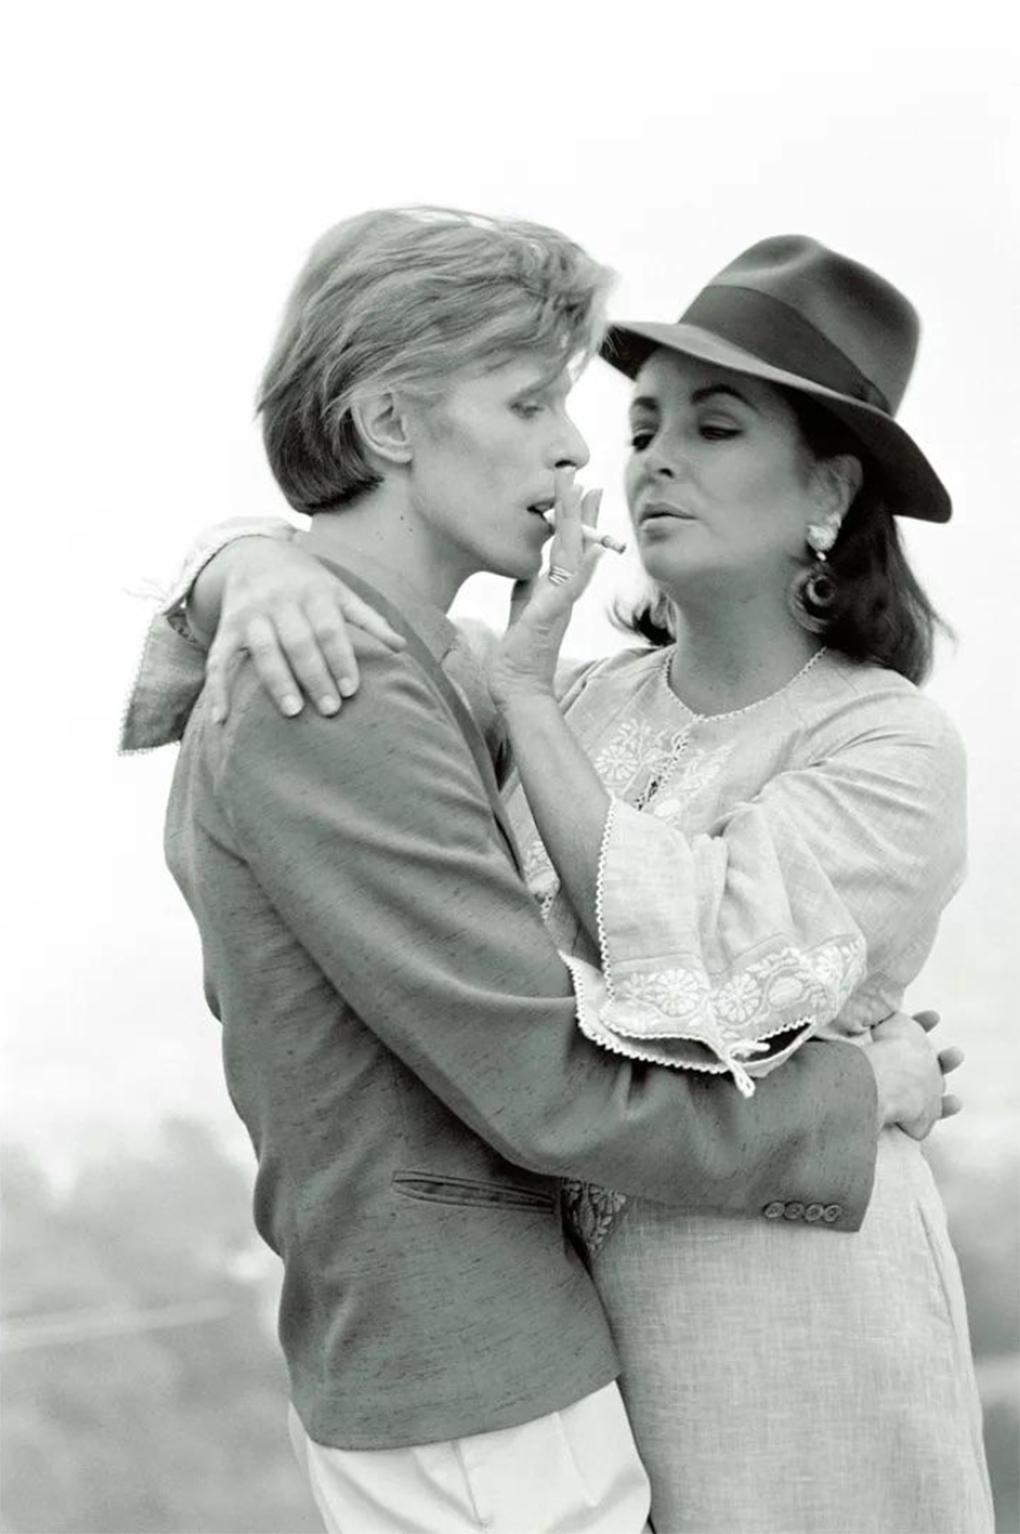 Seltener, signierter Künstlerabzug von David Bowie und Elizabeth Taylor von Terry O'Neill

David Bowie und die Schauspielerin Elizabeth Taylor treffen sich zum ersten Mal im Haus von George Cukor in Beverly Hills, 1974. 

12x16" Silbergelatineabzug,